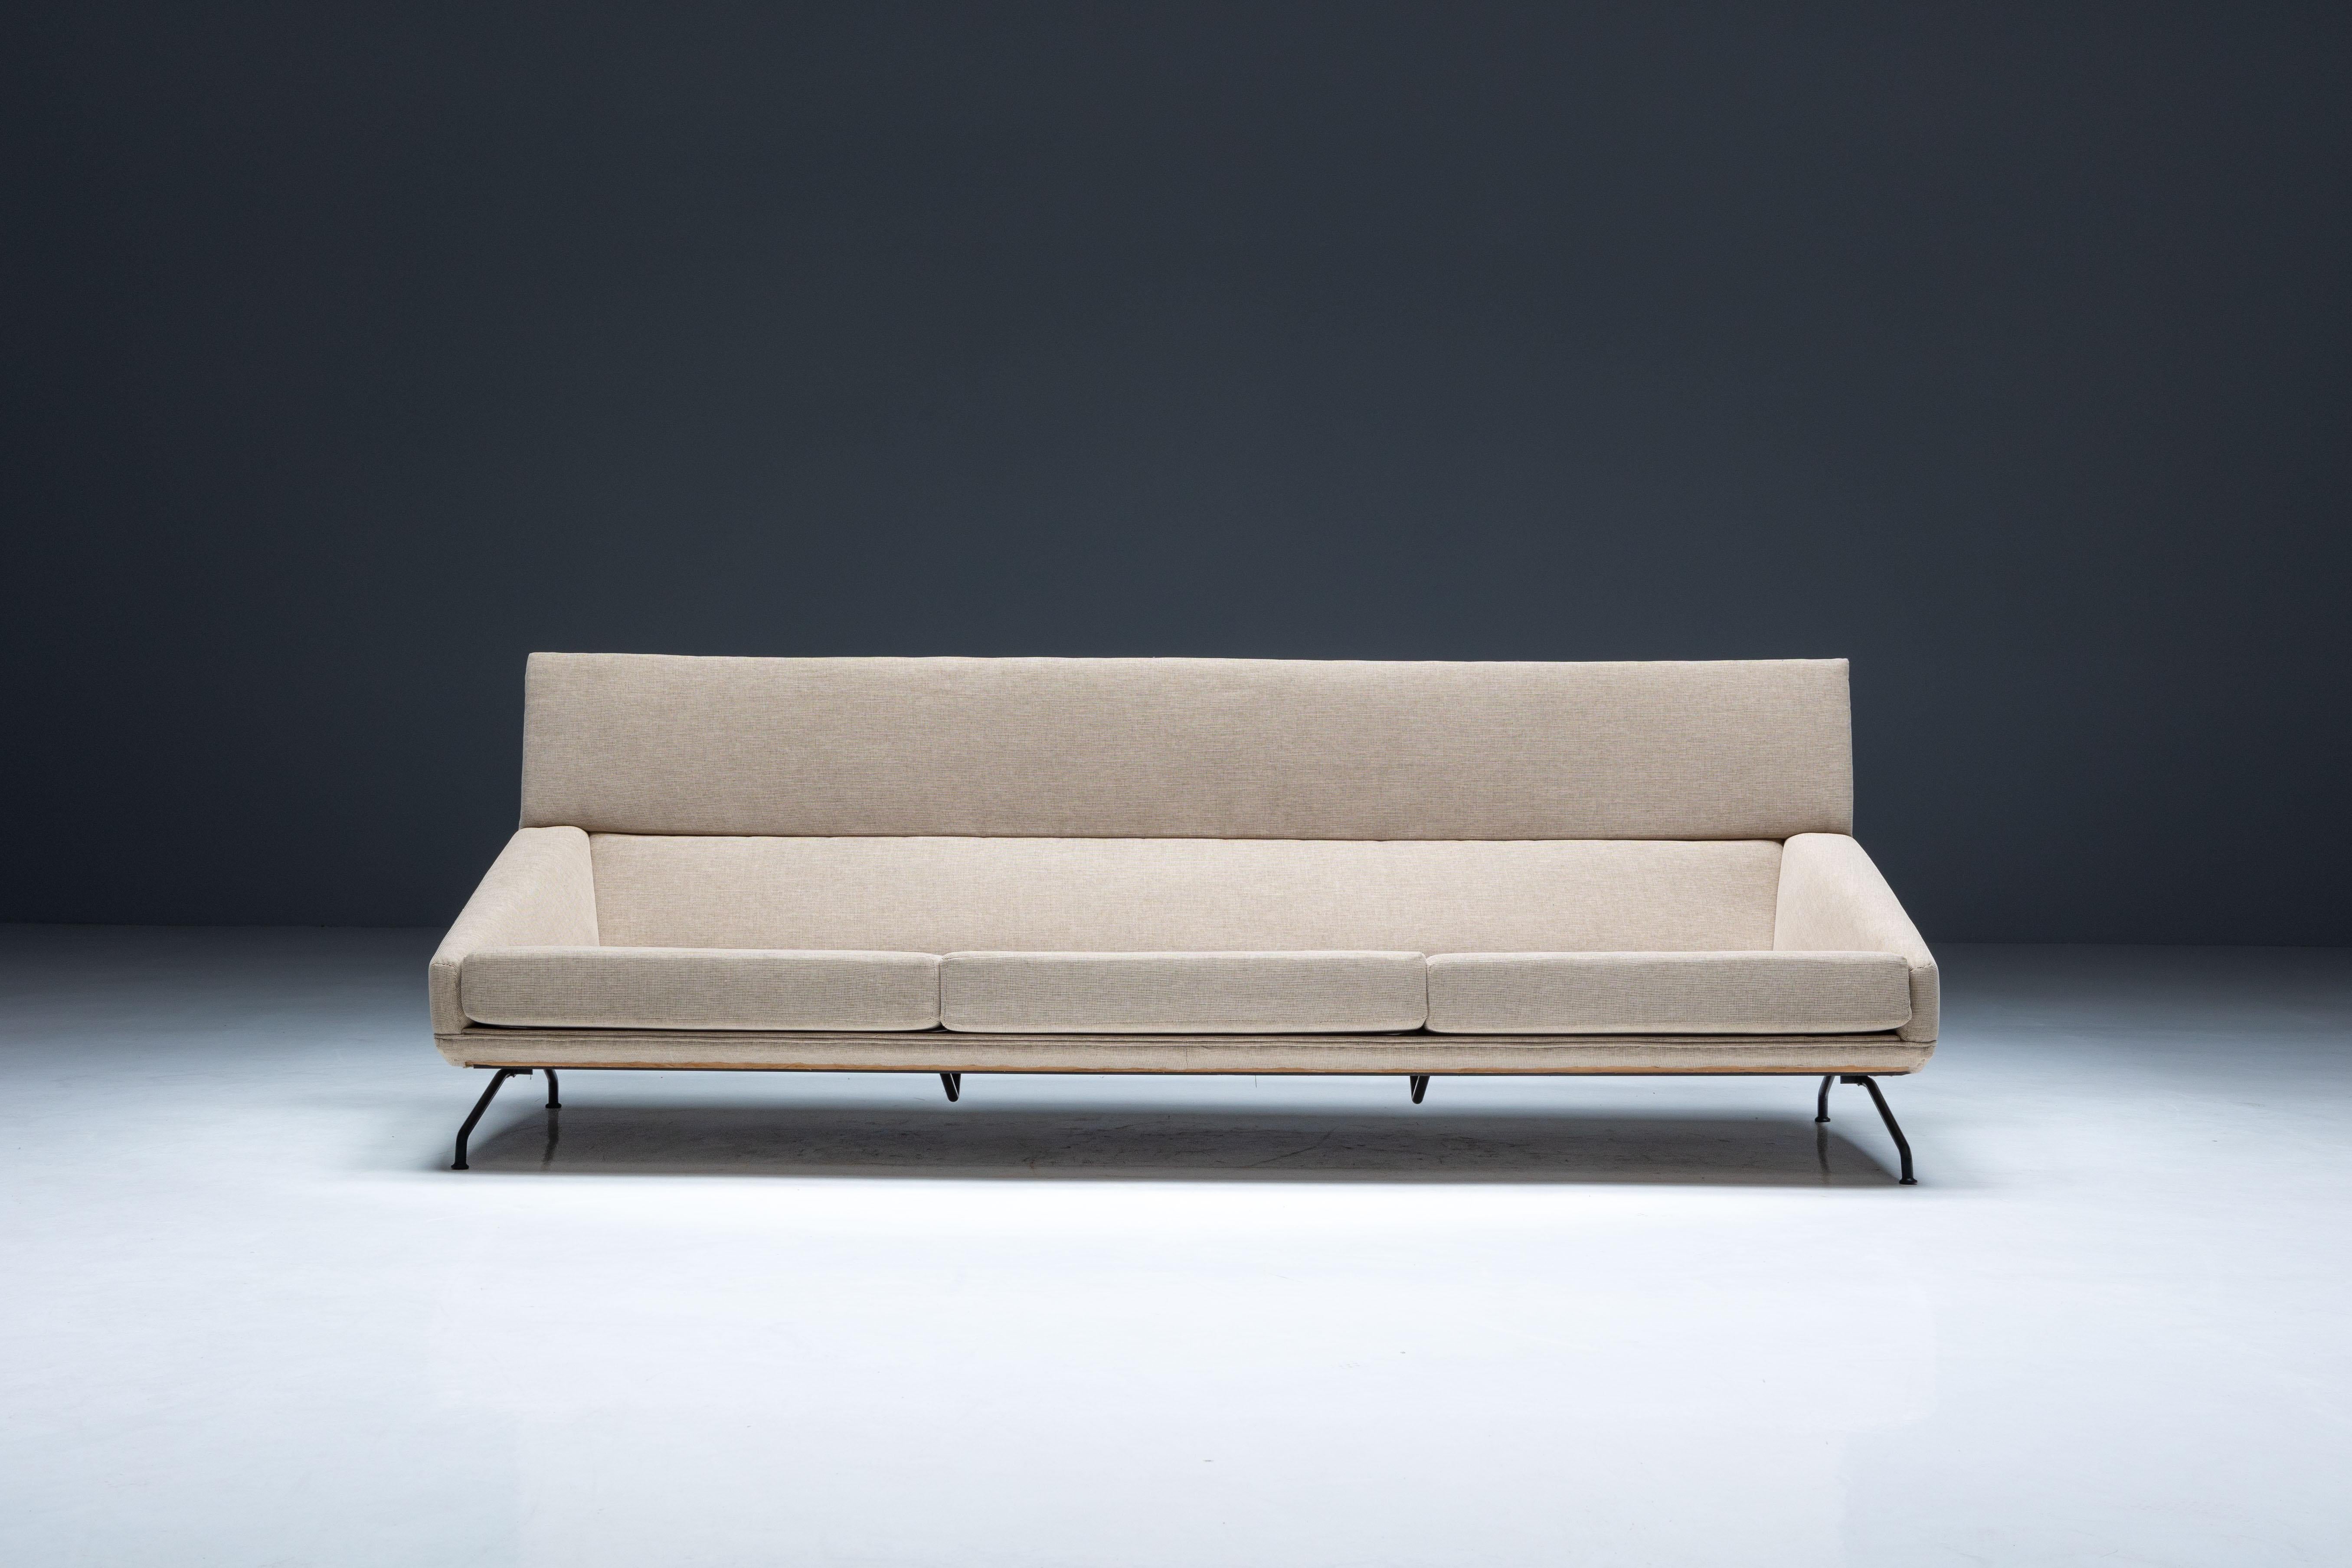 Dreisitziges Sofa, entworfen von Georges van Rijck und hergestellt von Beaufort in Belgien. Dieses Stück verbindet die zeitlose Designästhetik der 1960er Jahre in Belgien mit zeitgenössischer Eleganz. Mit seinen hochwertigen Stoffbezügen strahlt er